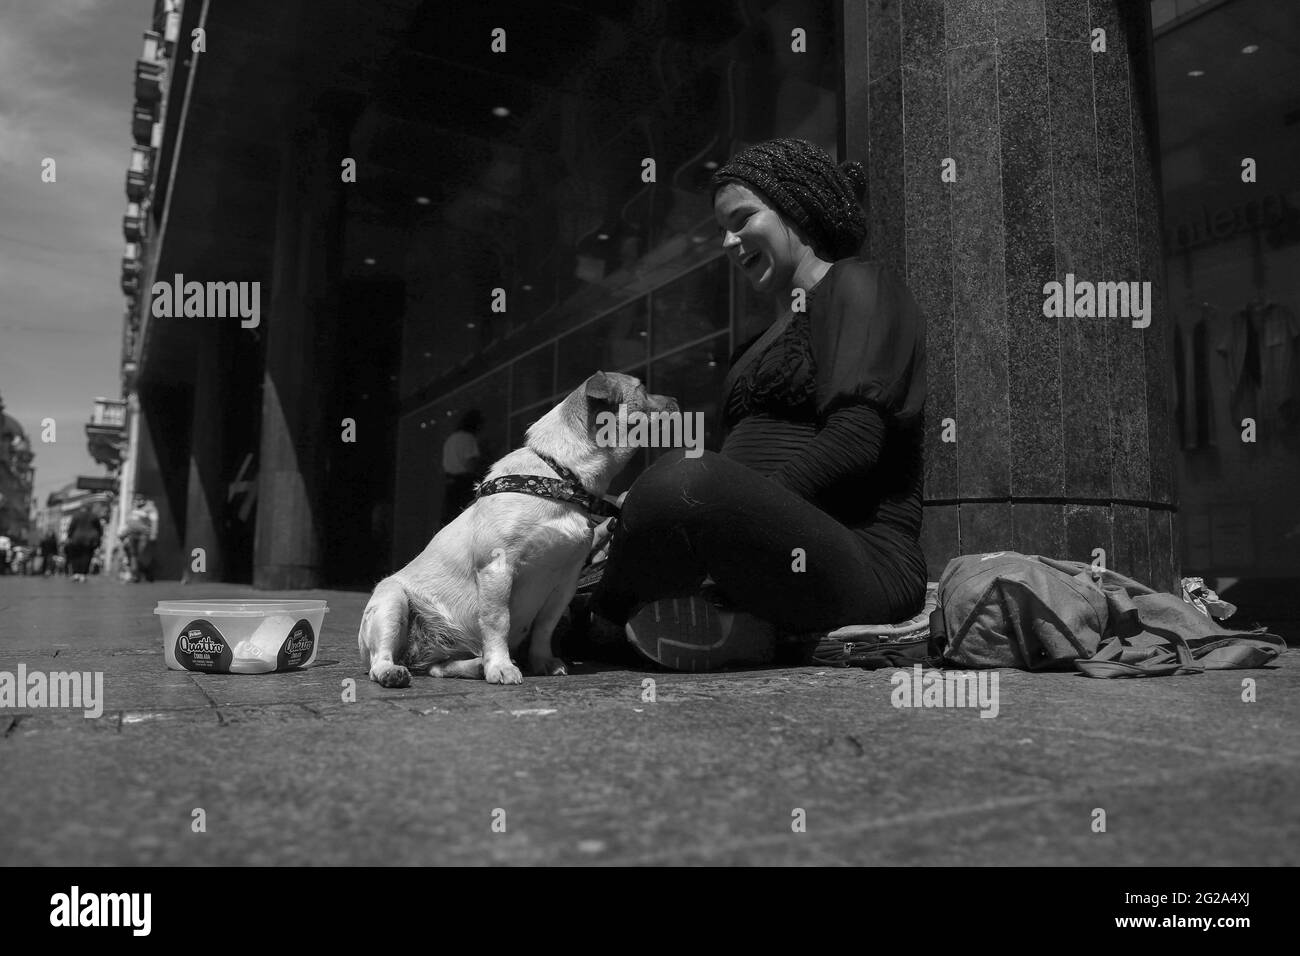 Serbie, 29 avril 2021 : un petit chien mignon aide une jeune femme enceinte à mendier dans la rue Knez Mihailova à Belgrade (N/B) Banque D'Images